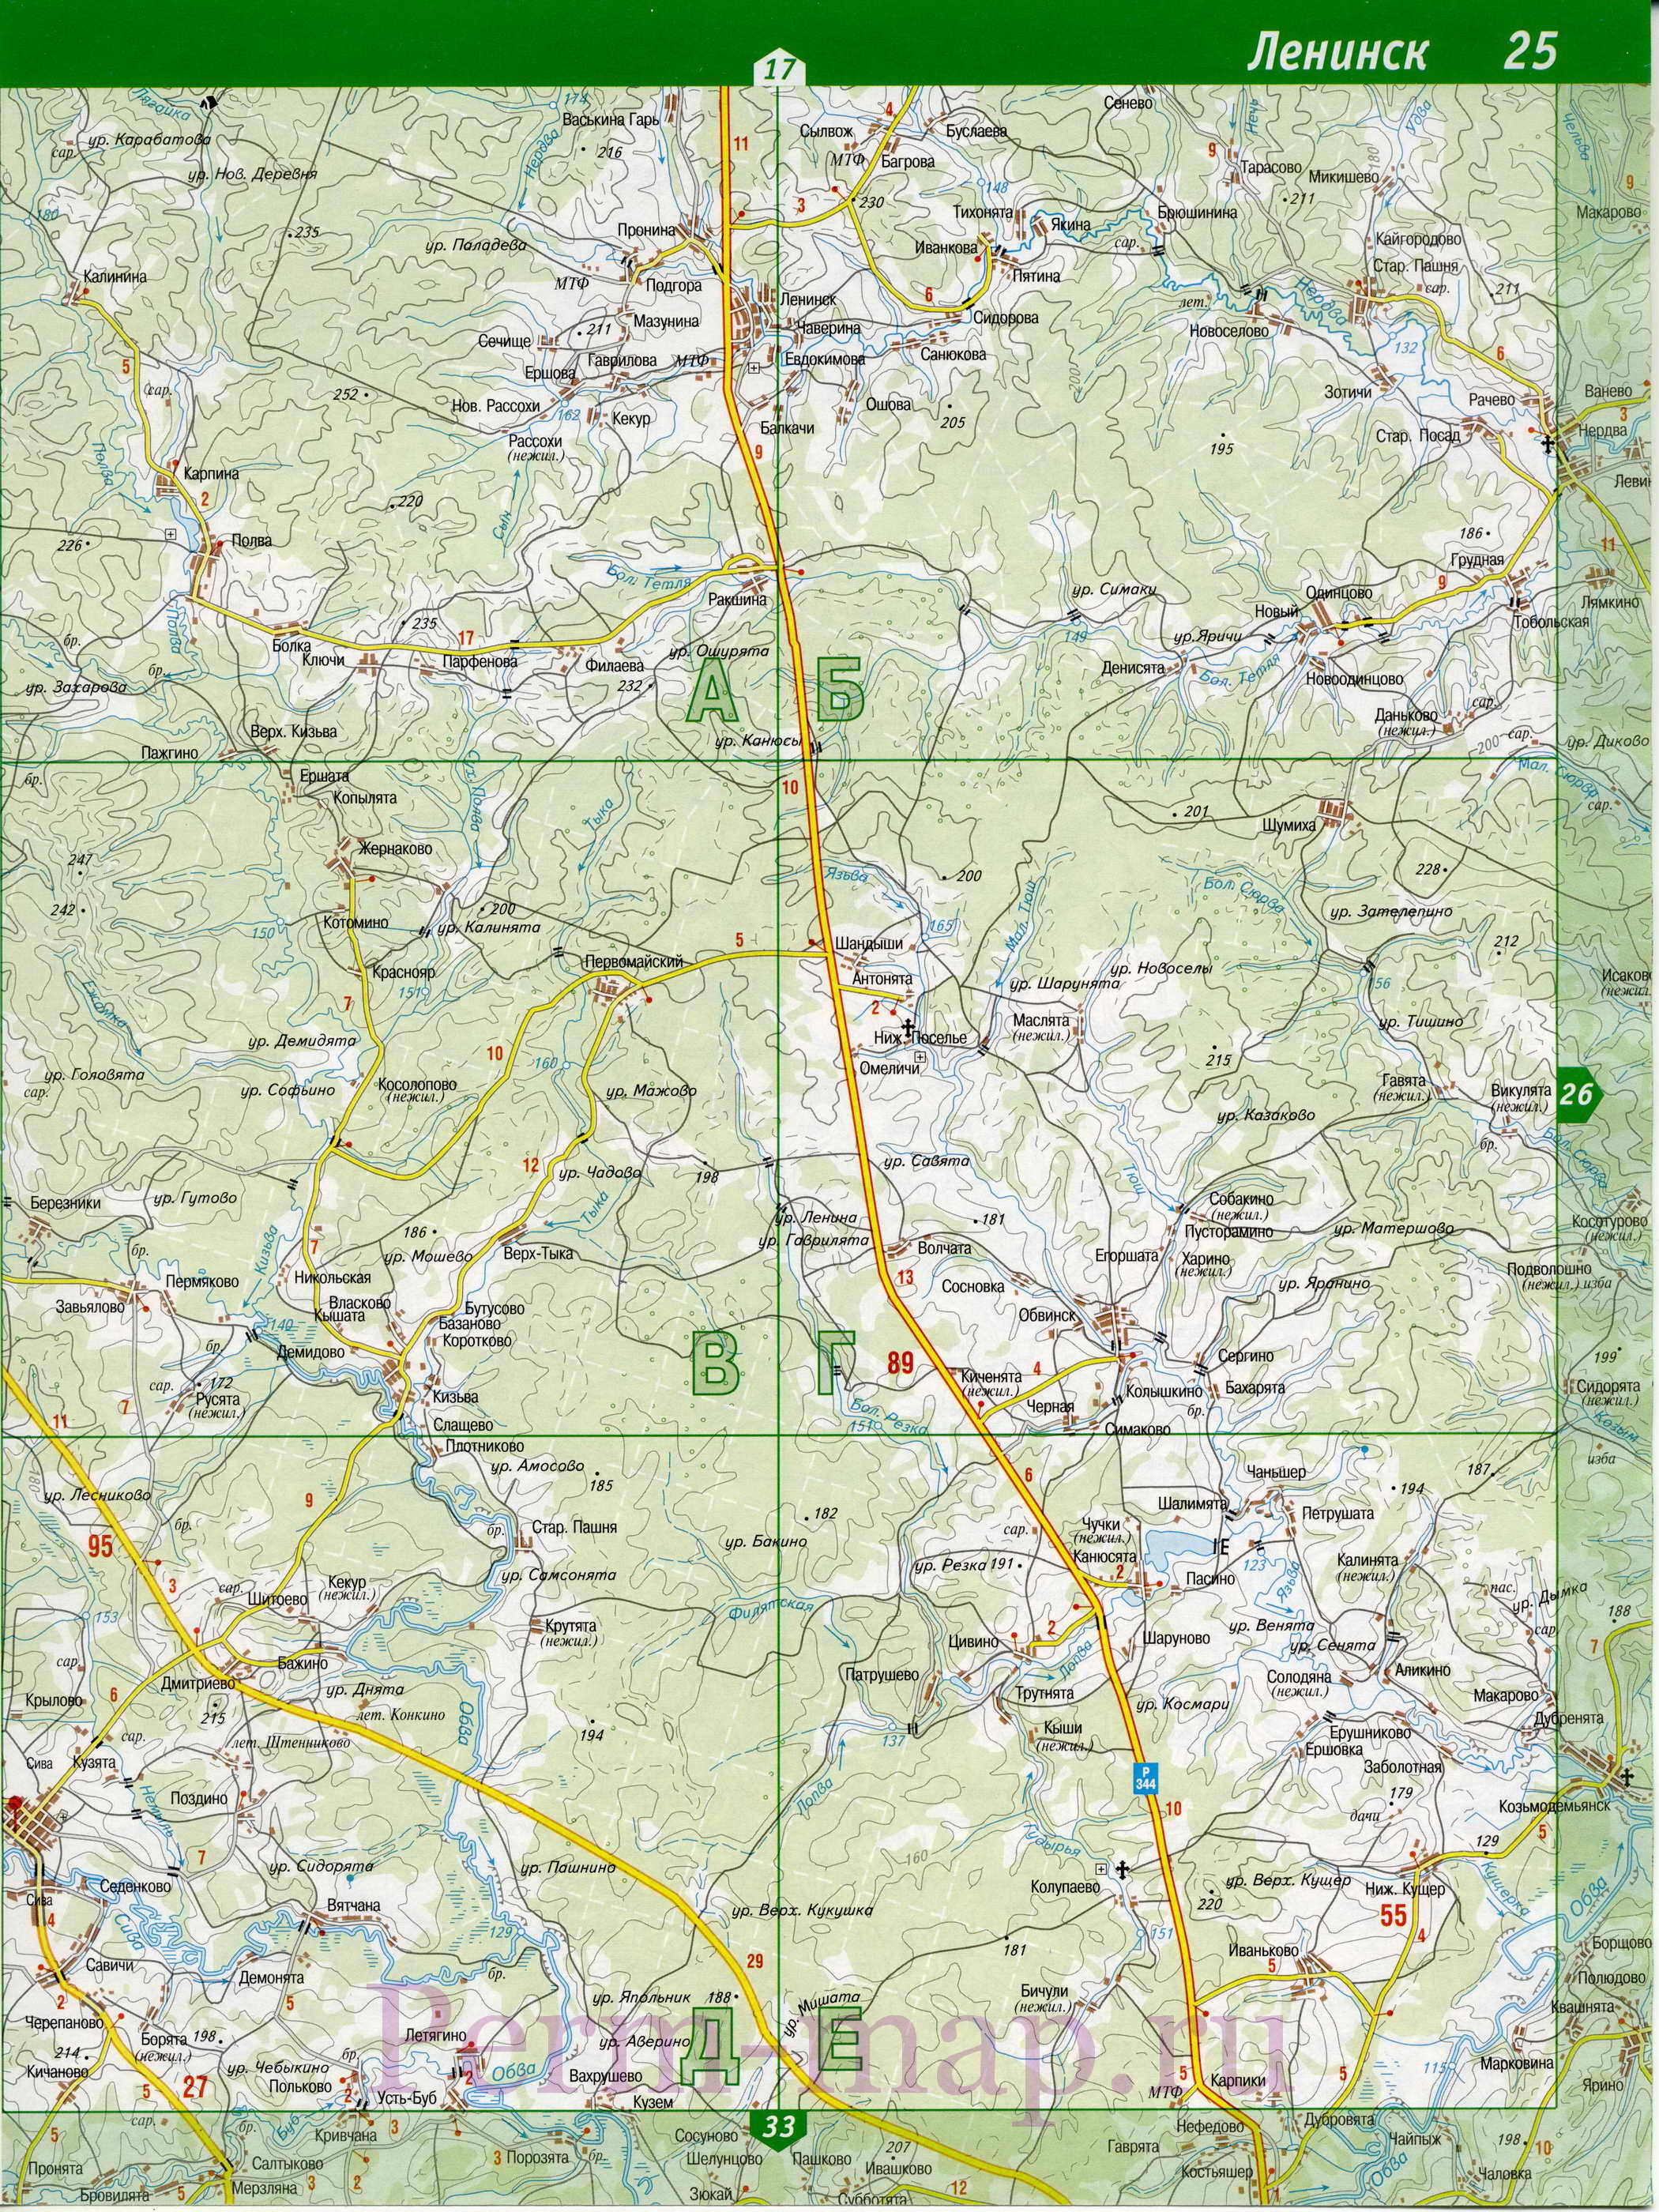 Сивинский район на карте Пермского края. Подробная карта автомобильных дорог Сивинского района, B0 - 